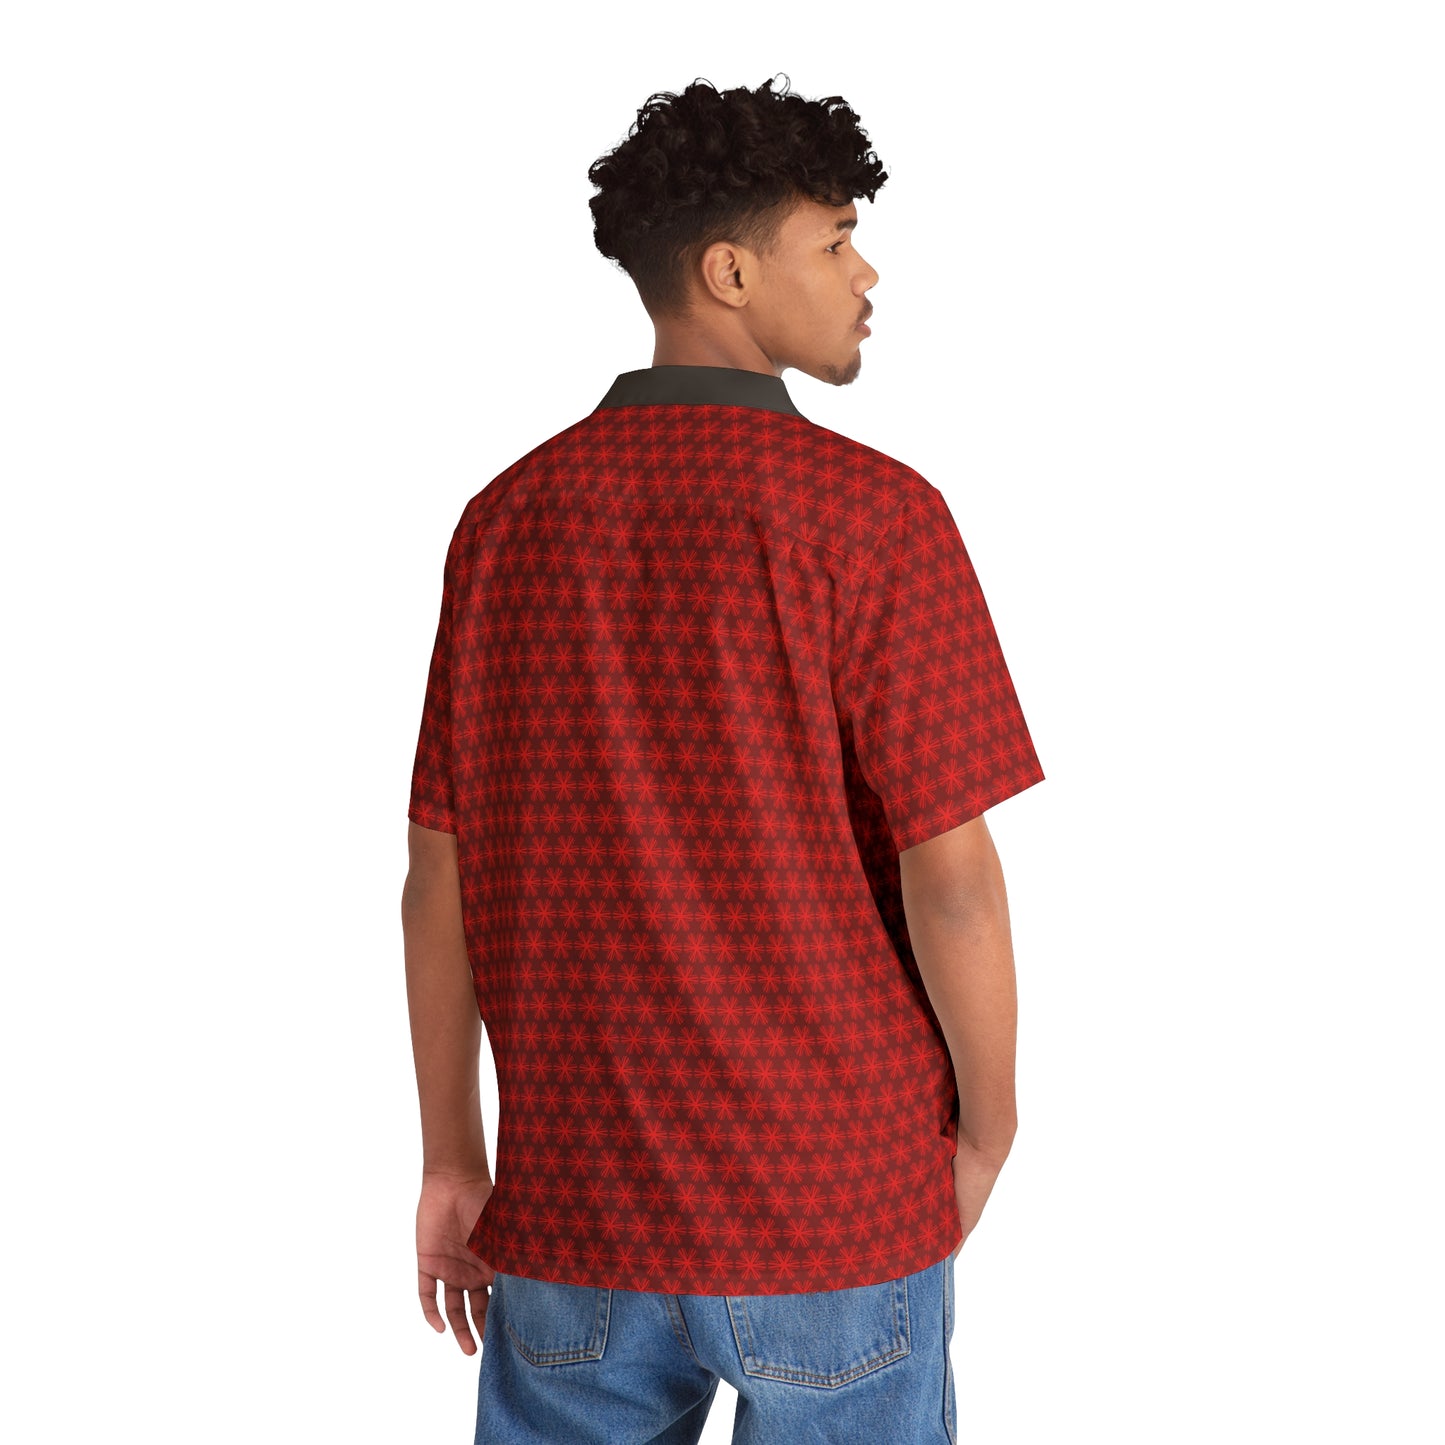 Red V Star Pattern - Black collar - Men's Hawaiian Shirt